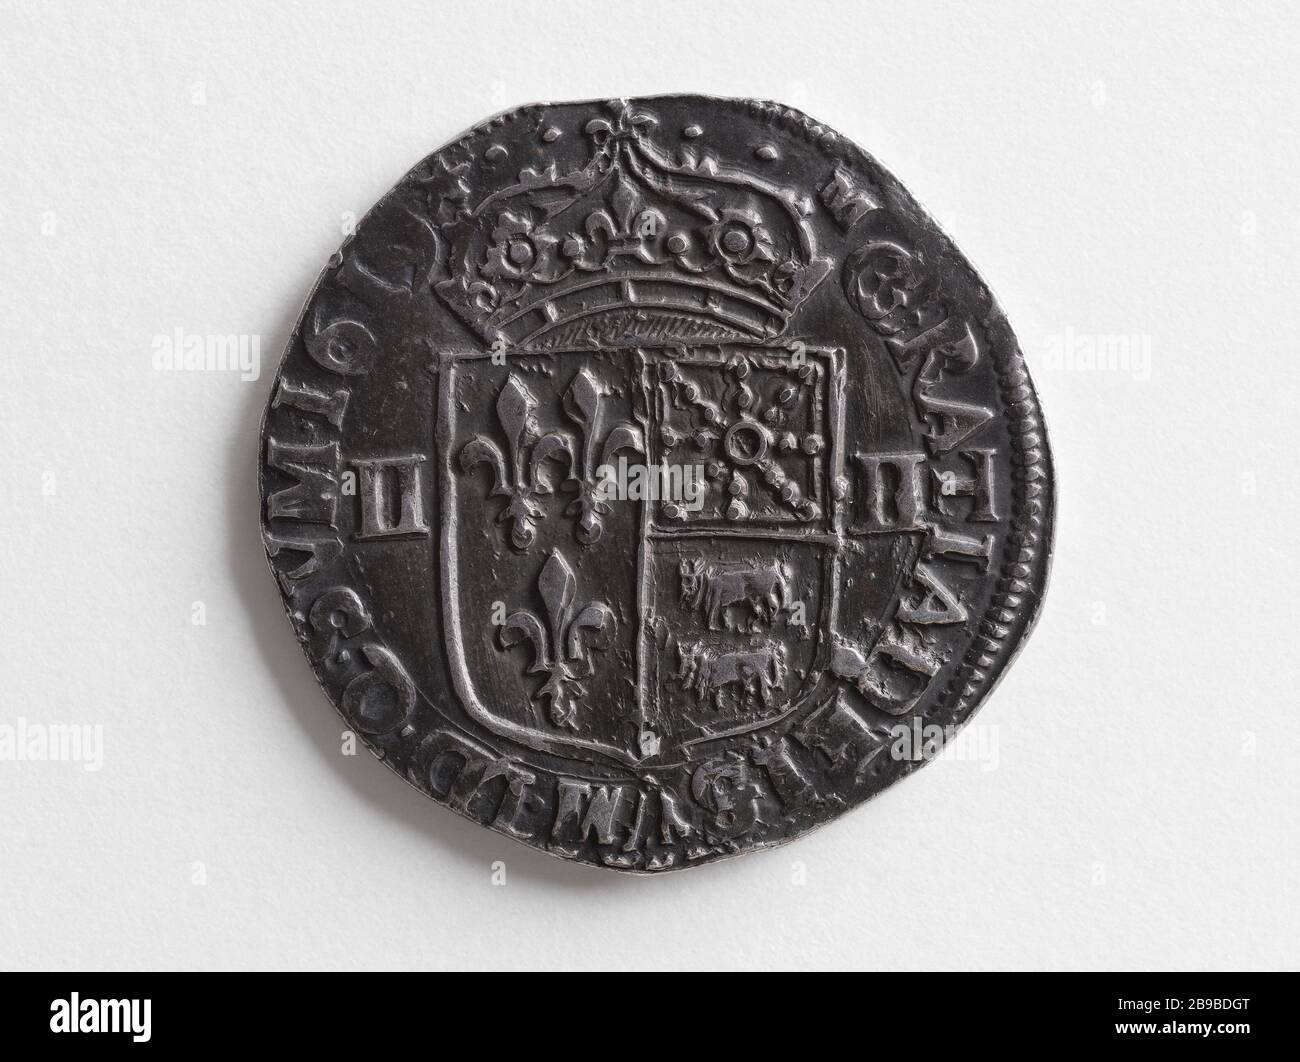 Quart de Béarn silver shield of Louis XIII, in 1619 Anonyme. Quart d'écu de Béarn en argent de Louis XIII, 1619. Argent, 1619. Musée Carnavalet, Histoire de Paris. Stock Photo